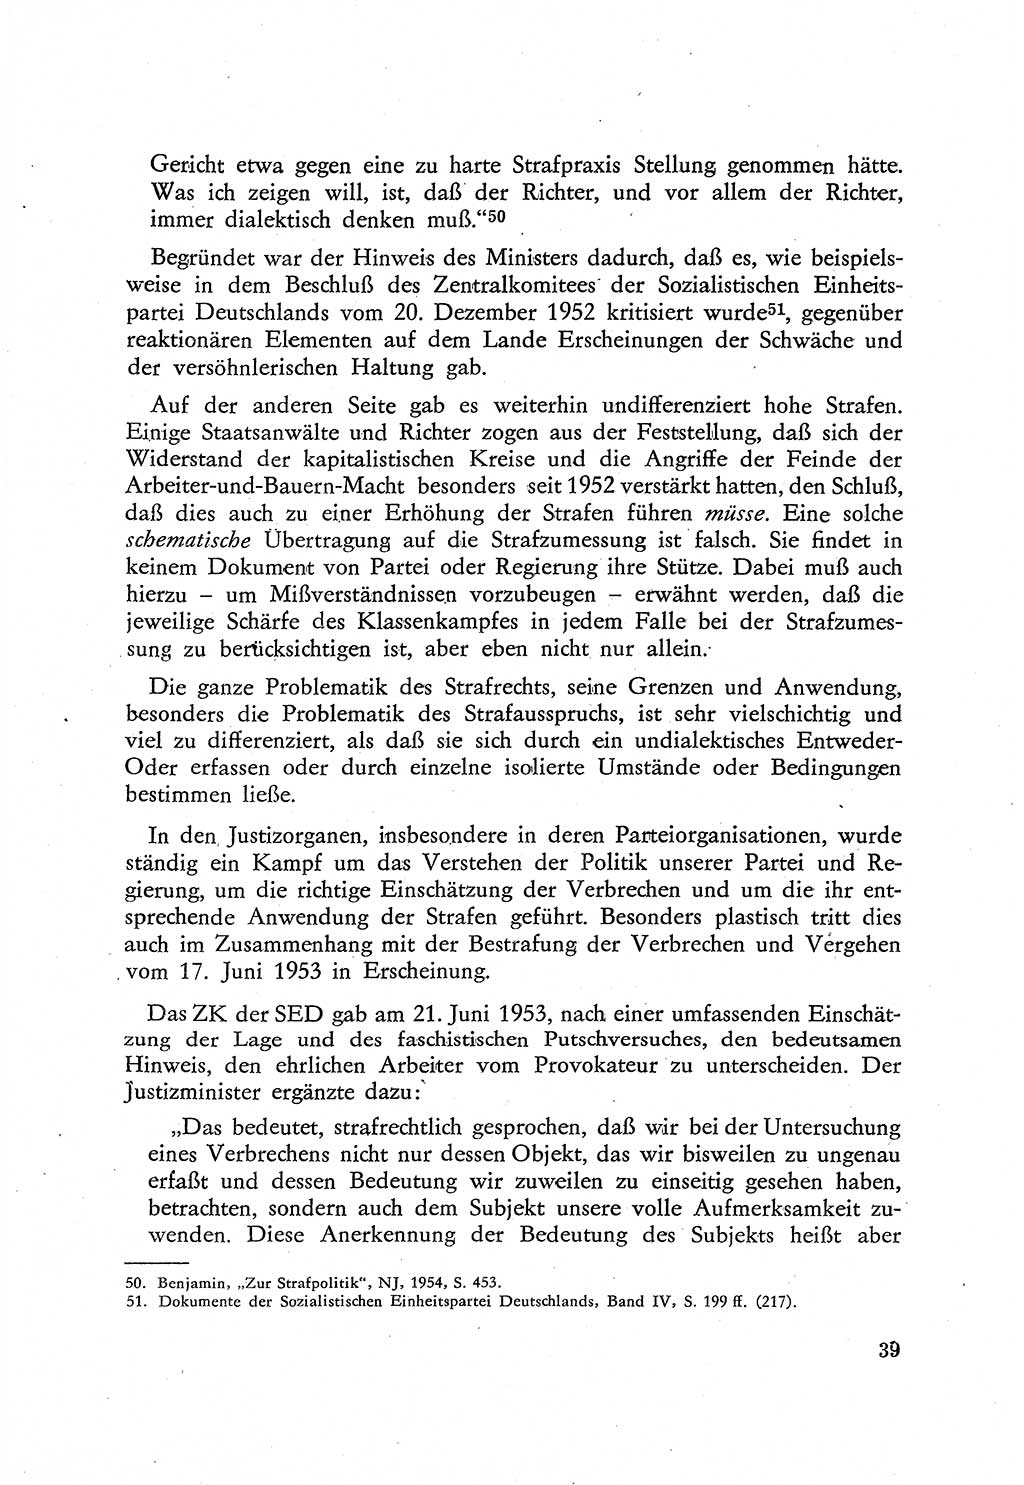 Beiträge zum Strafrecht [Deutsche Demokratische Republik (DDR)], Staatsverbrechen 1959, Seite 39 (Beitr. Strafr. DDR St.-Verbr. 1959, S. 39)